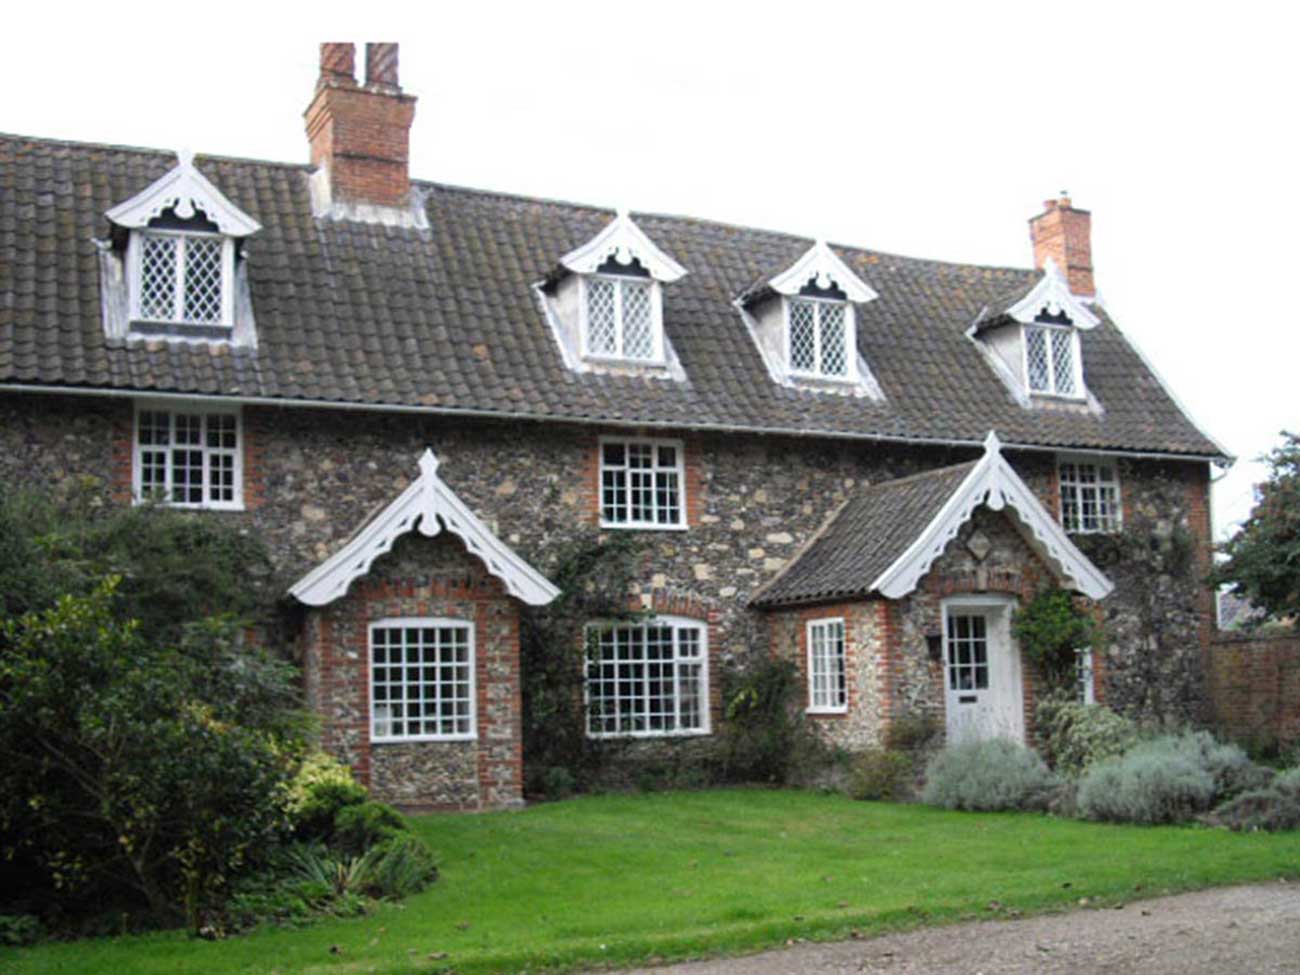 Grade II Liste House in Dunwich Suffolk by Beech Architects